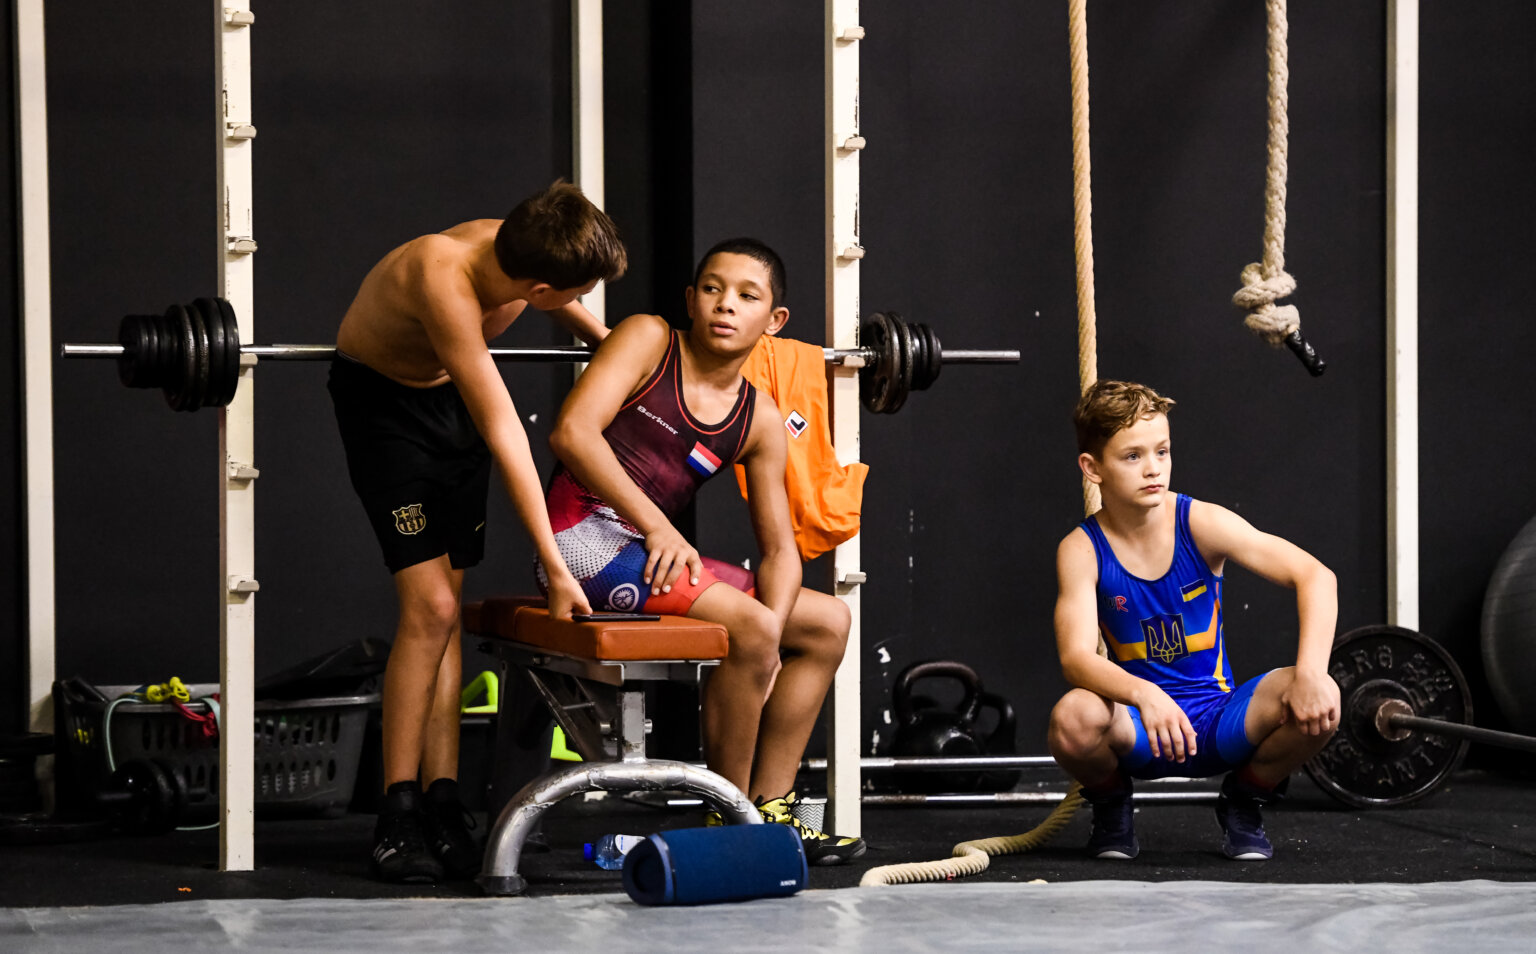 2 worstelaars van de young lions en een worstelaar uit oekraine rusten uit na een training bij krachtsportcentrum olympia